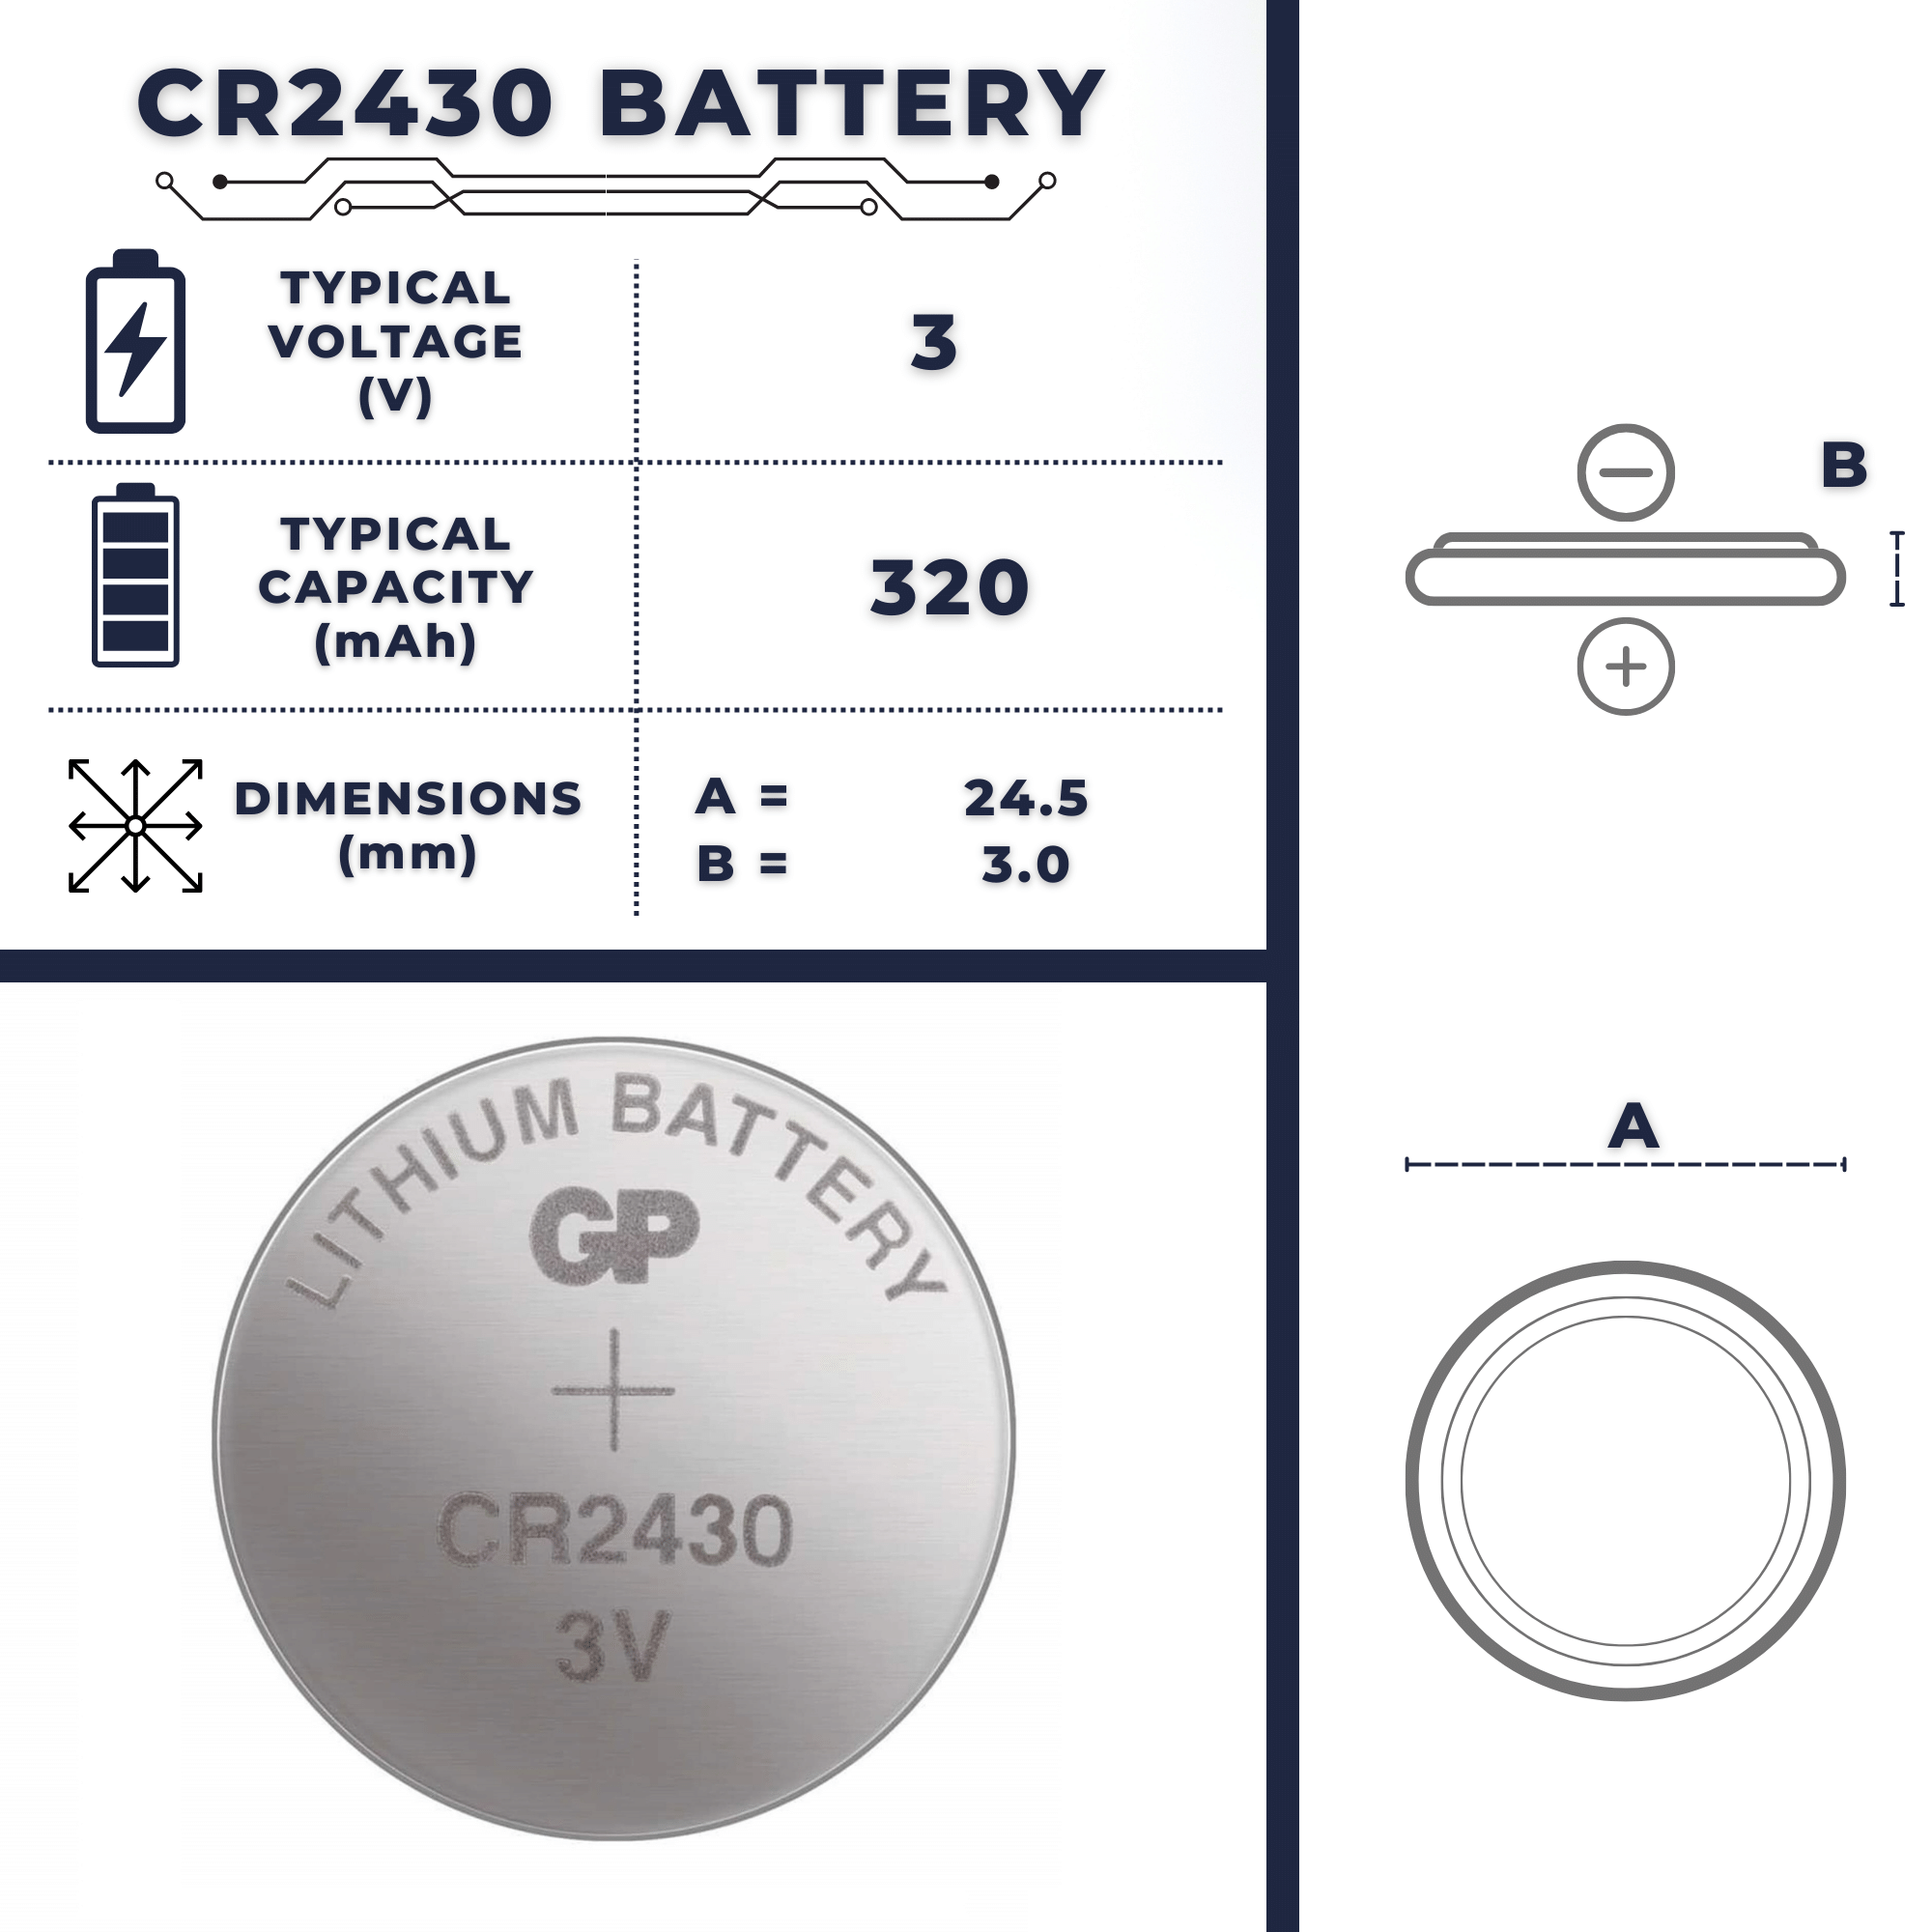 Sherlock Holmes hvorfor gæld CR2430 Battery | Size, Voltage, Capacity, Advantage & Uses